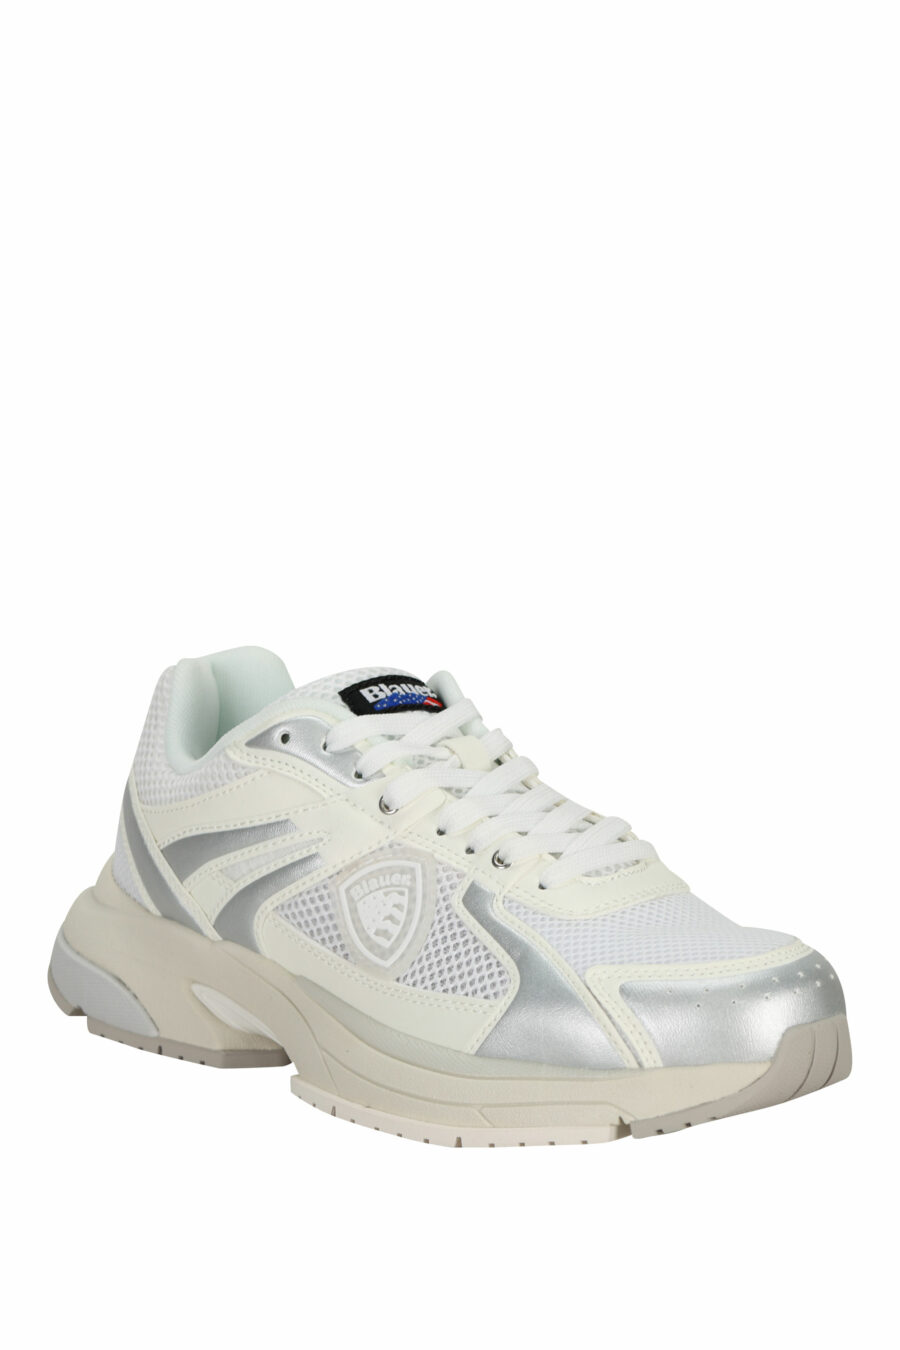 Chaussures blanches avec logo "aigle" argenté et bouclier blanc - 8058156543539 1